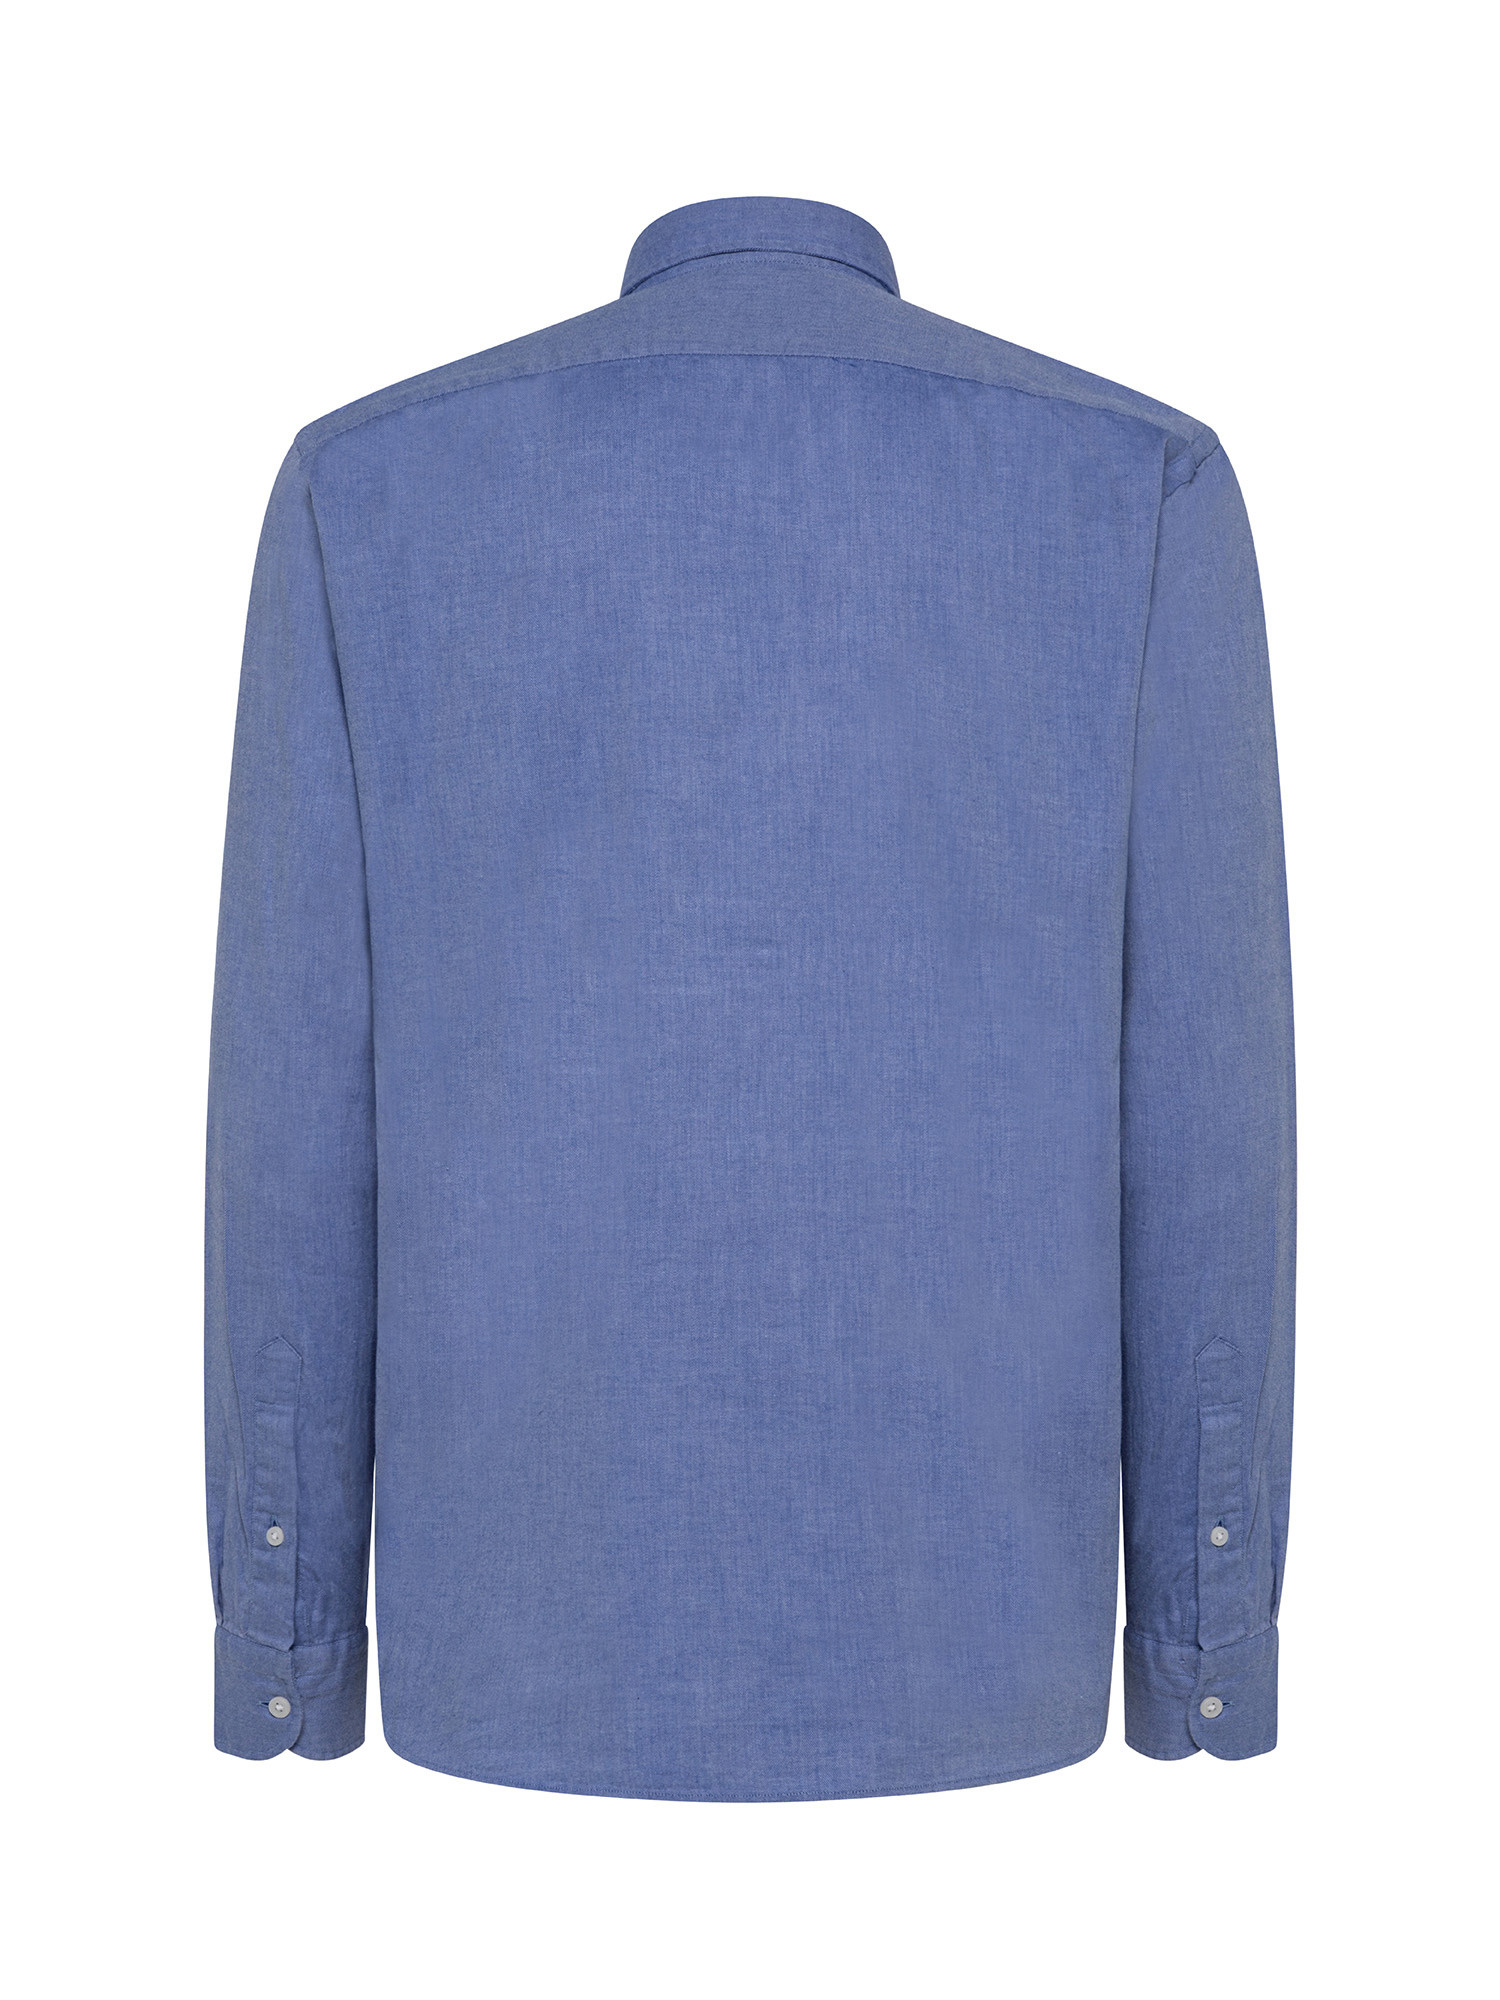 Camicia tailor fit in morbida flanella di cotone organico, Azzurro, large image number 1